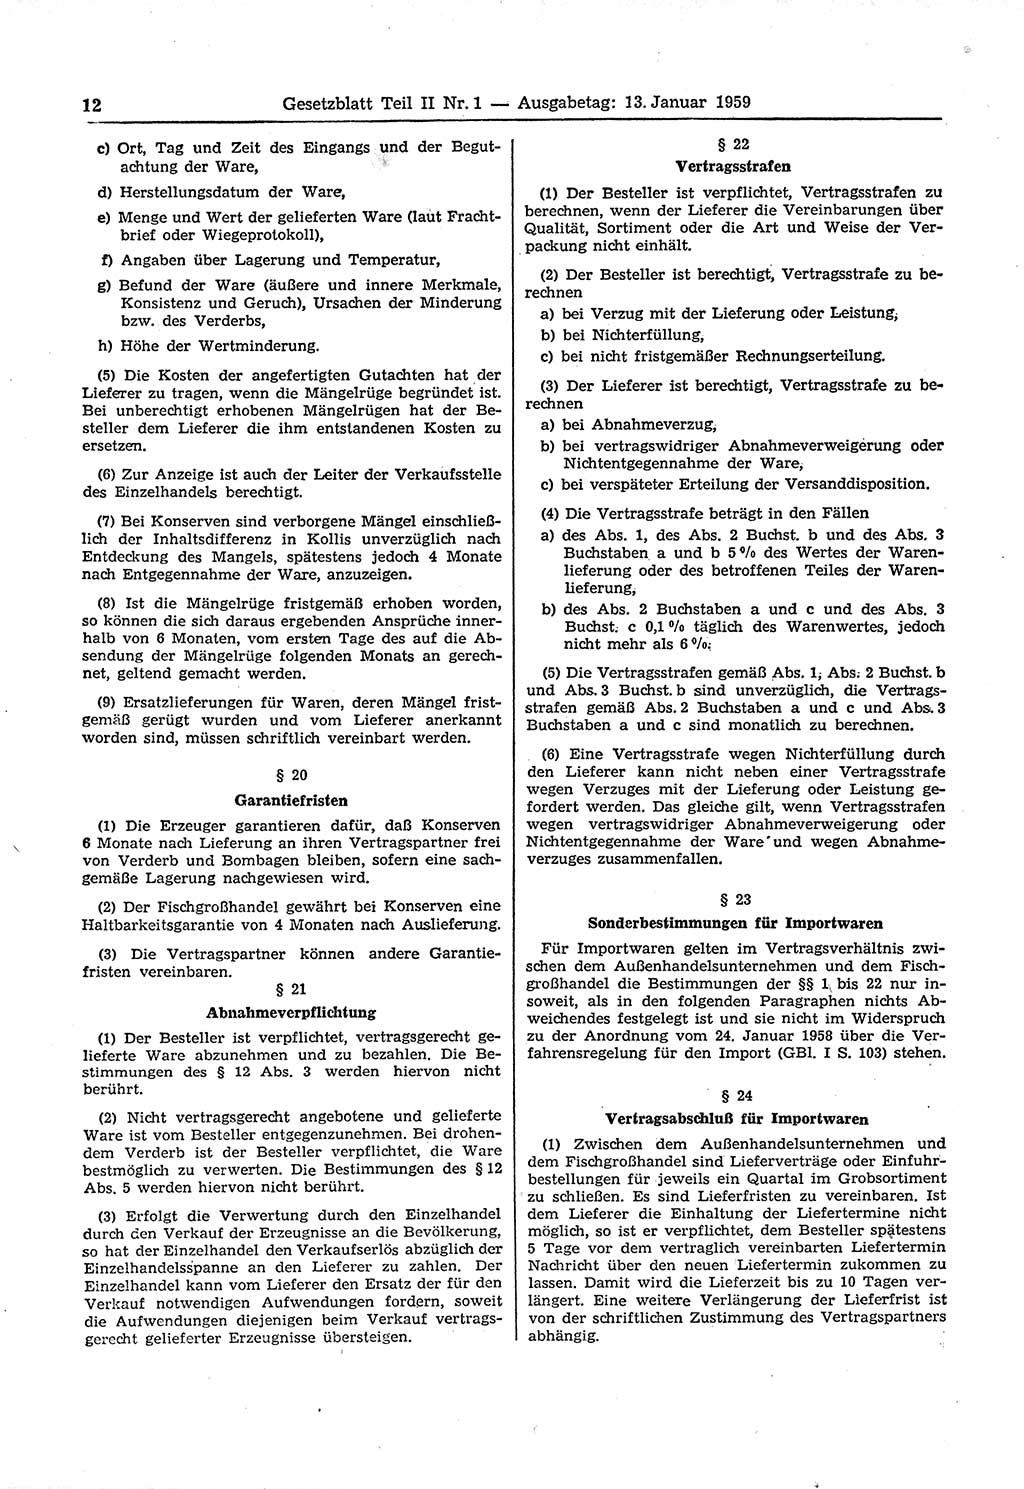 Gesetzblatt (GBl.) der Deutschen Demokratischen Republik (DDR) Teil ⅠⅠ 1959, Seite 12 (GBl. DDR ⅠⅠ 1959, S. 12)